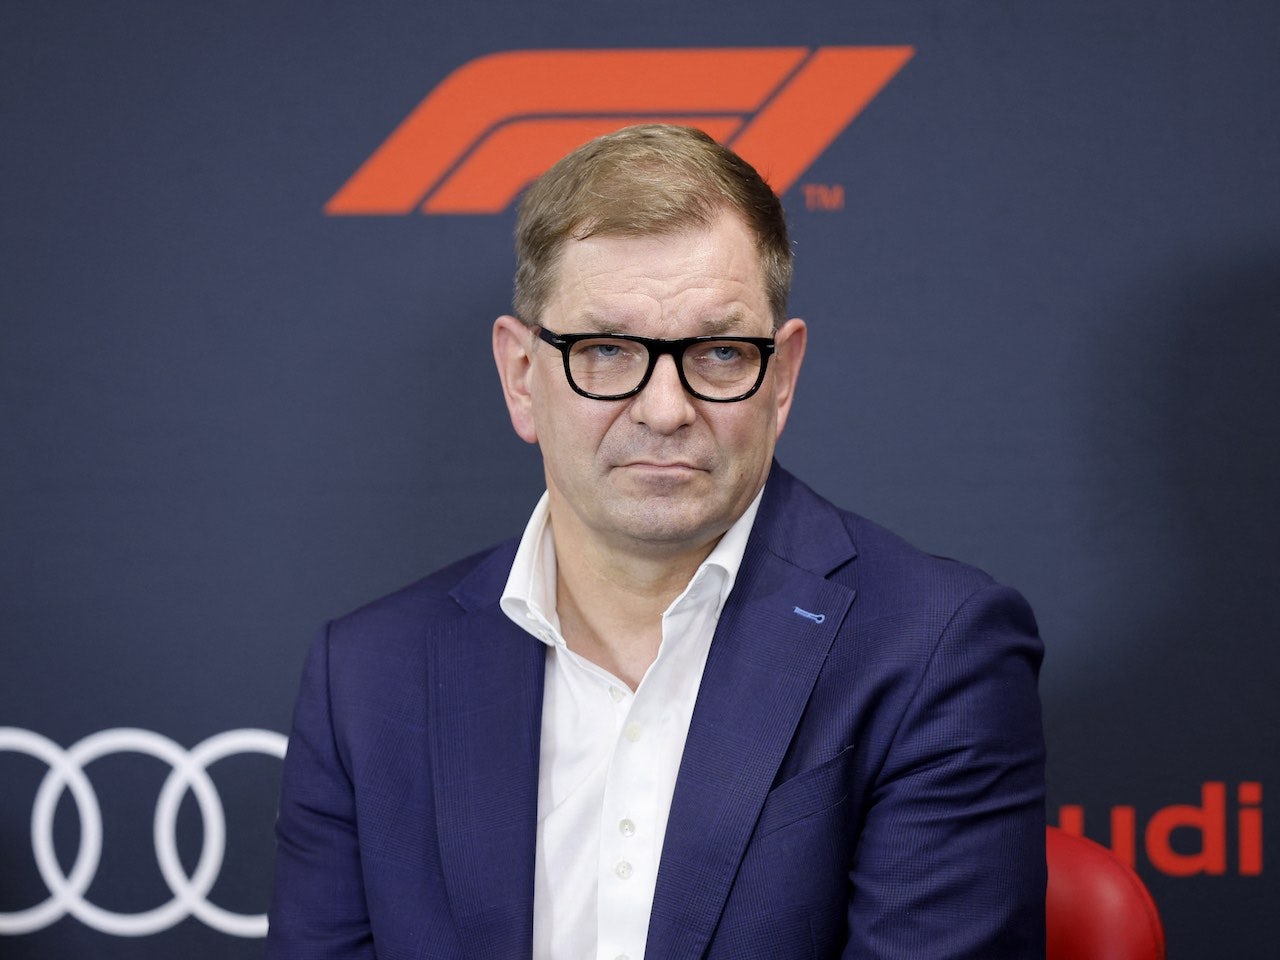 Audi reveals Porsche will also enter F1 in 2026